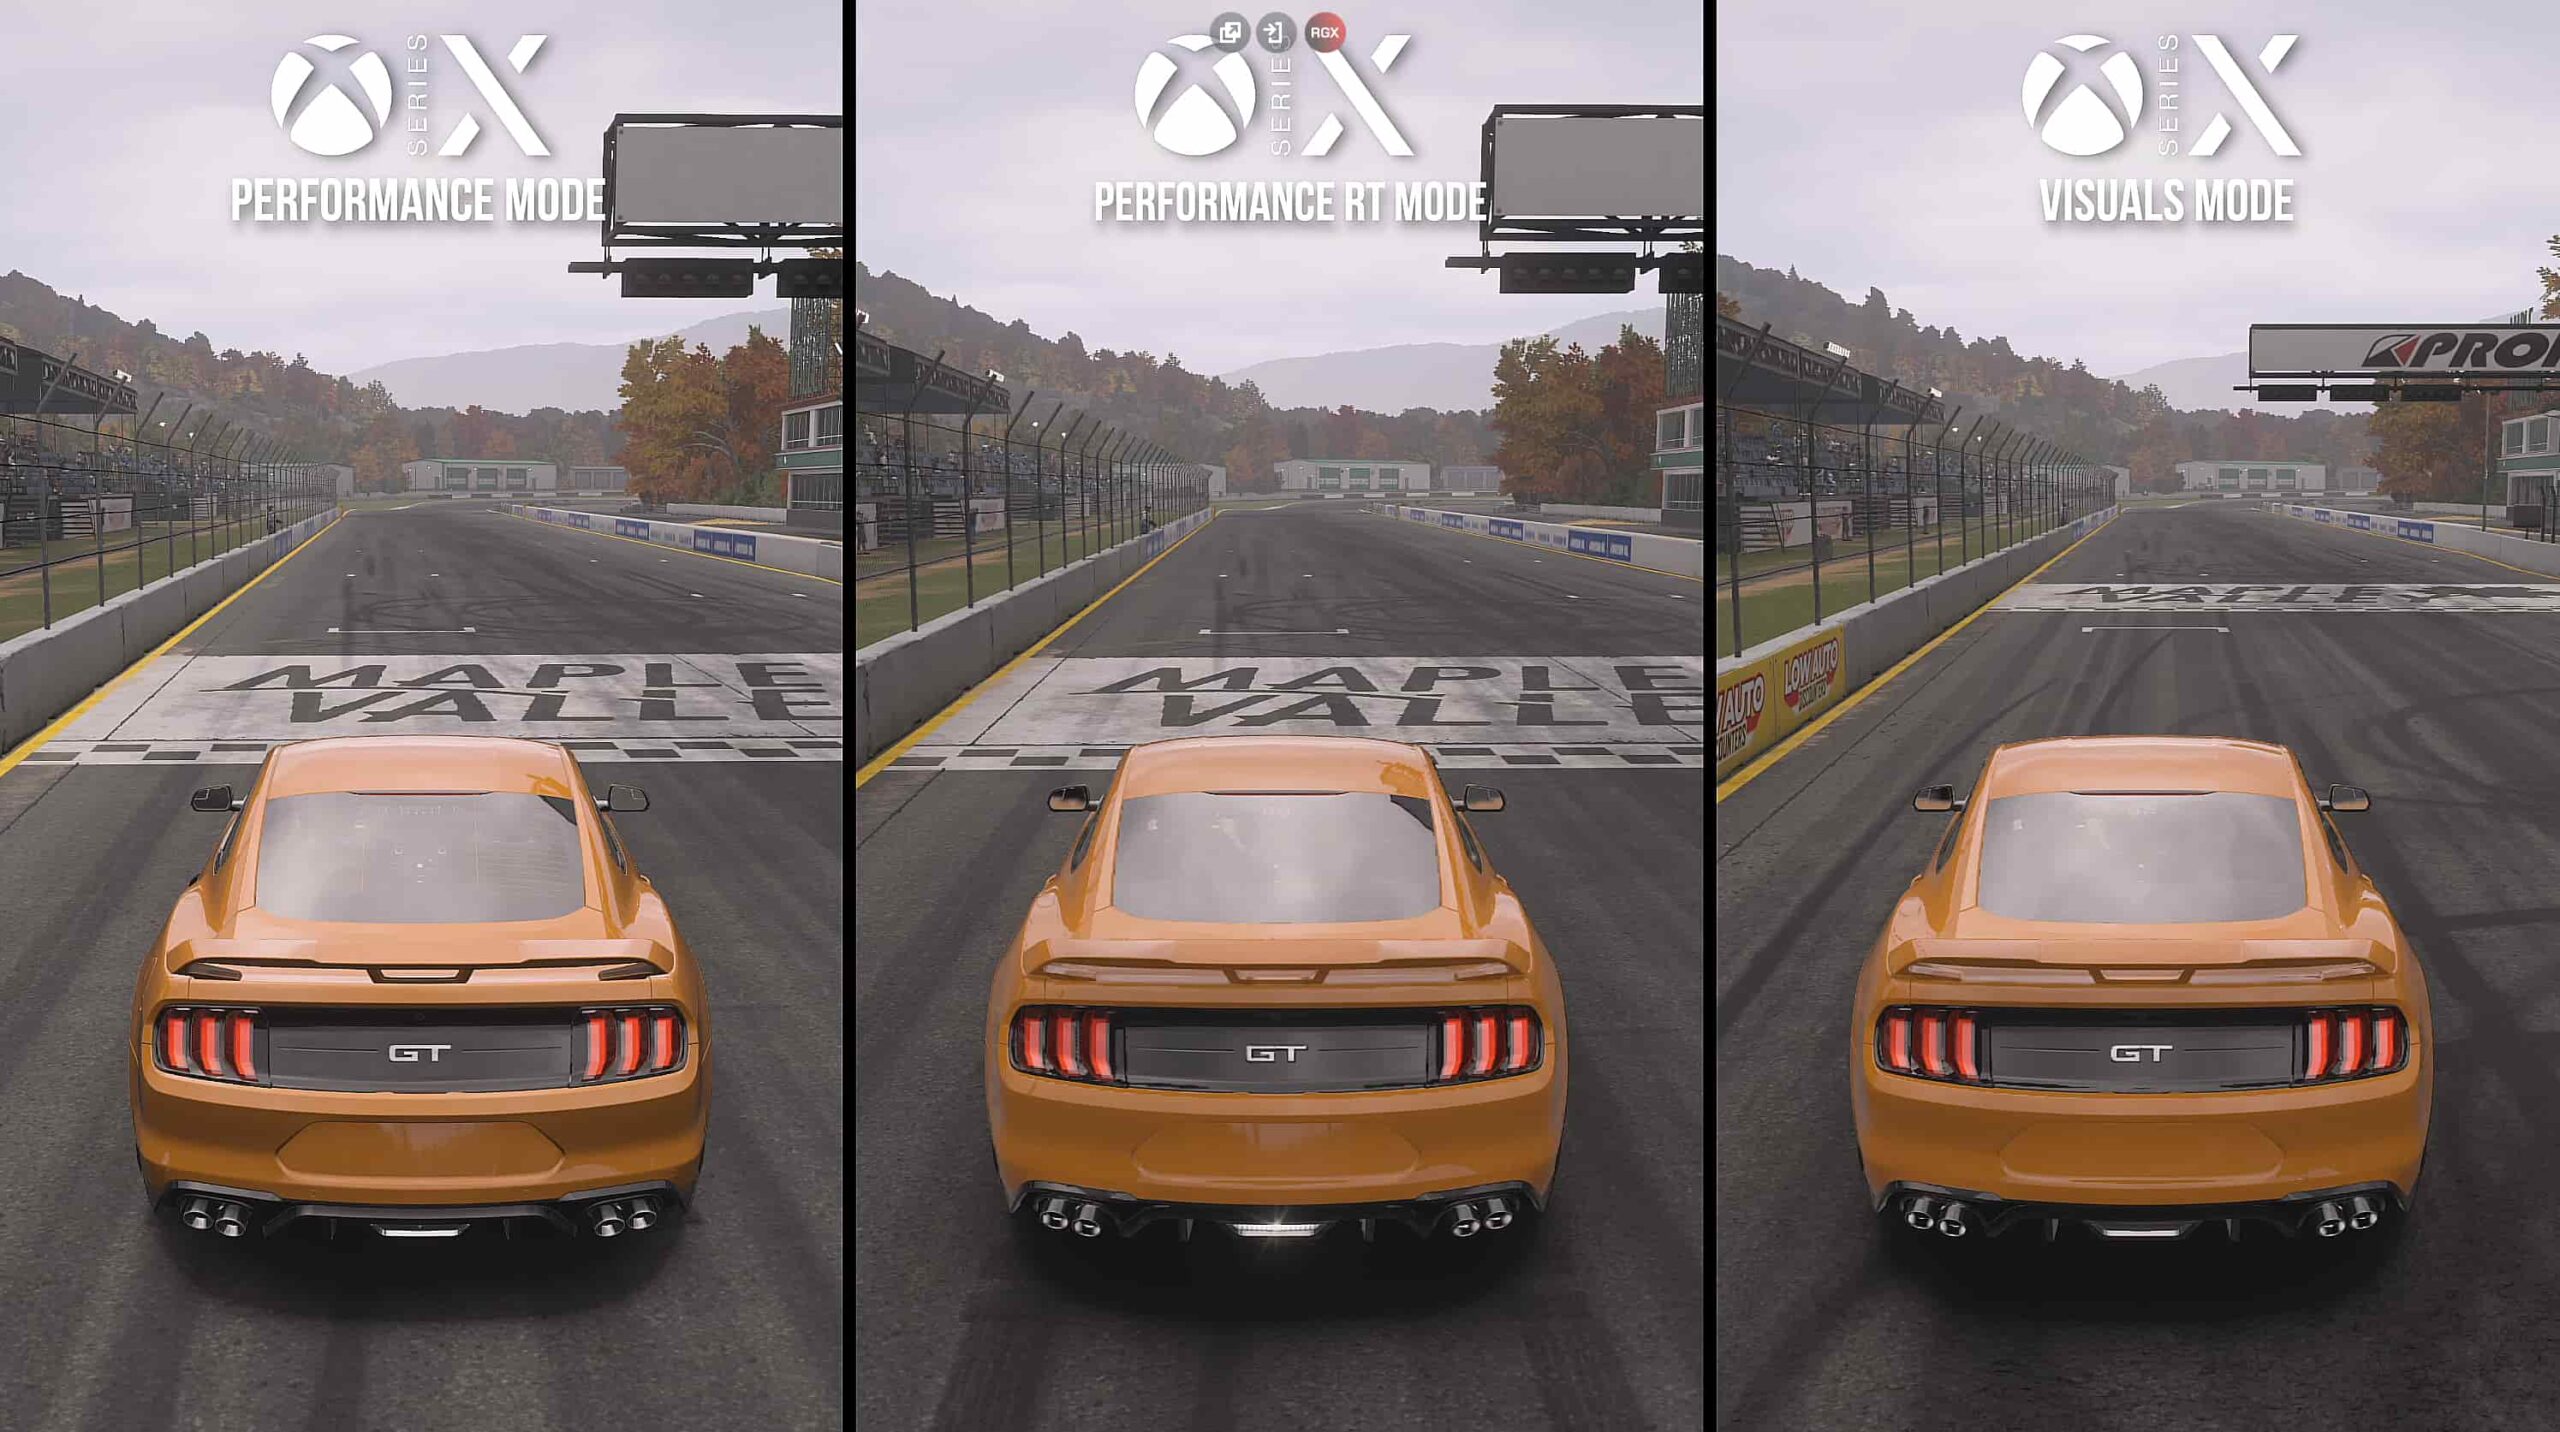 Vídeo compara gráficos de Forza Horizon 3 no Xbox One e no PC